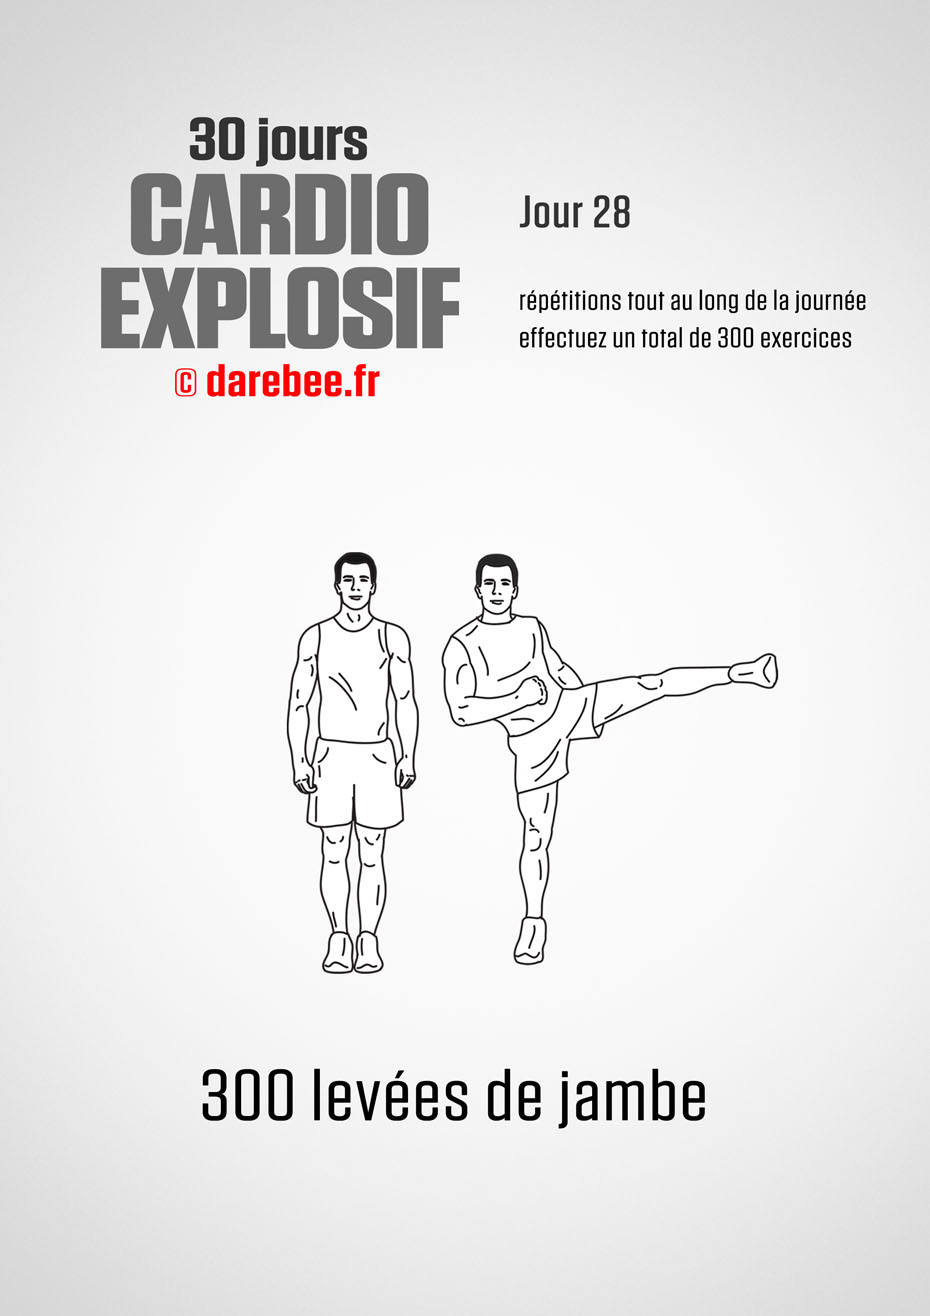 30 Days of Cardio Blast by DAREBEE